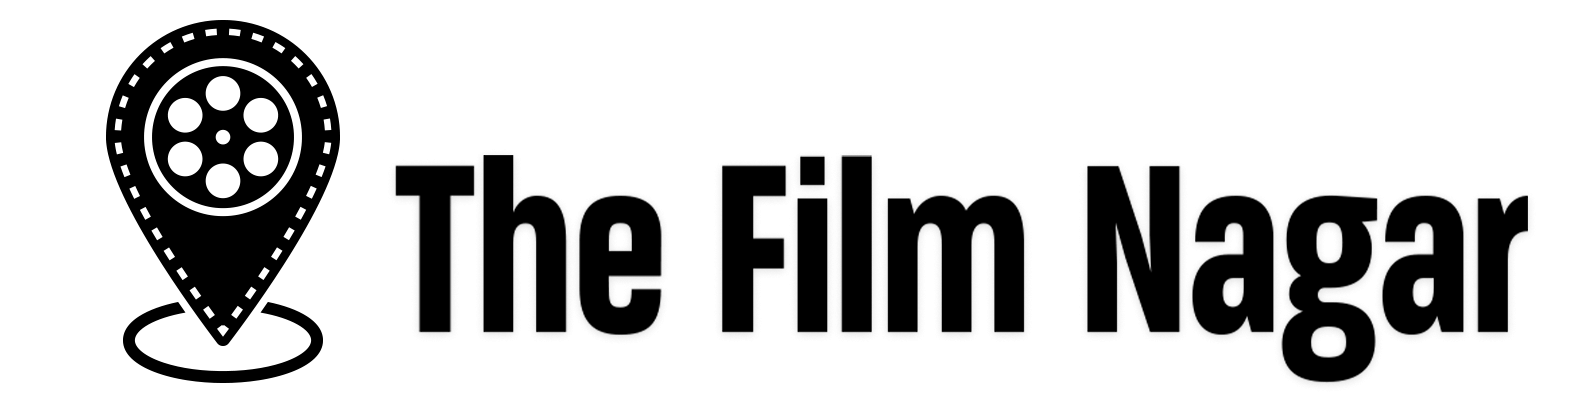 film nagar logo